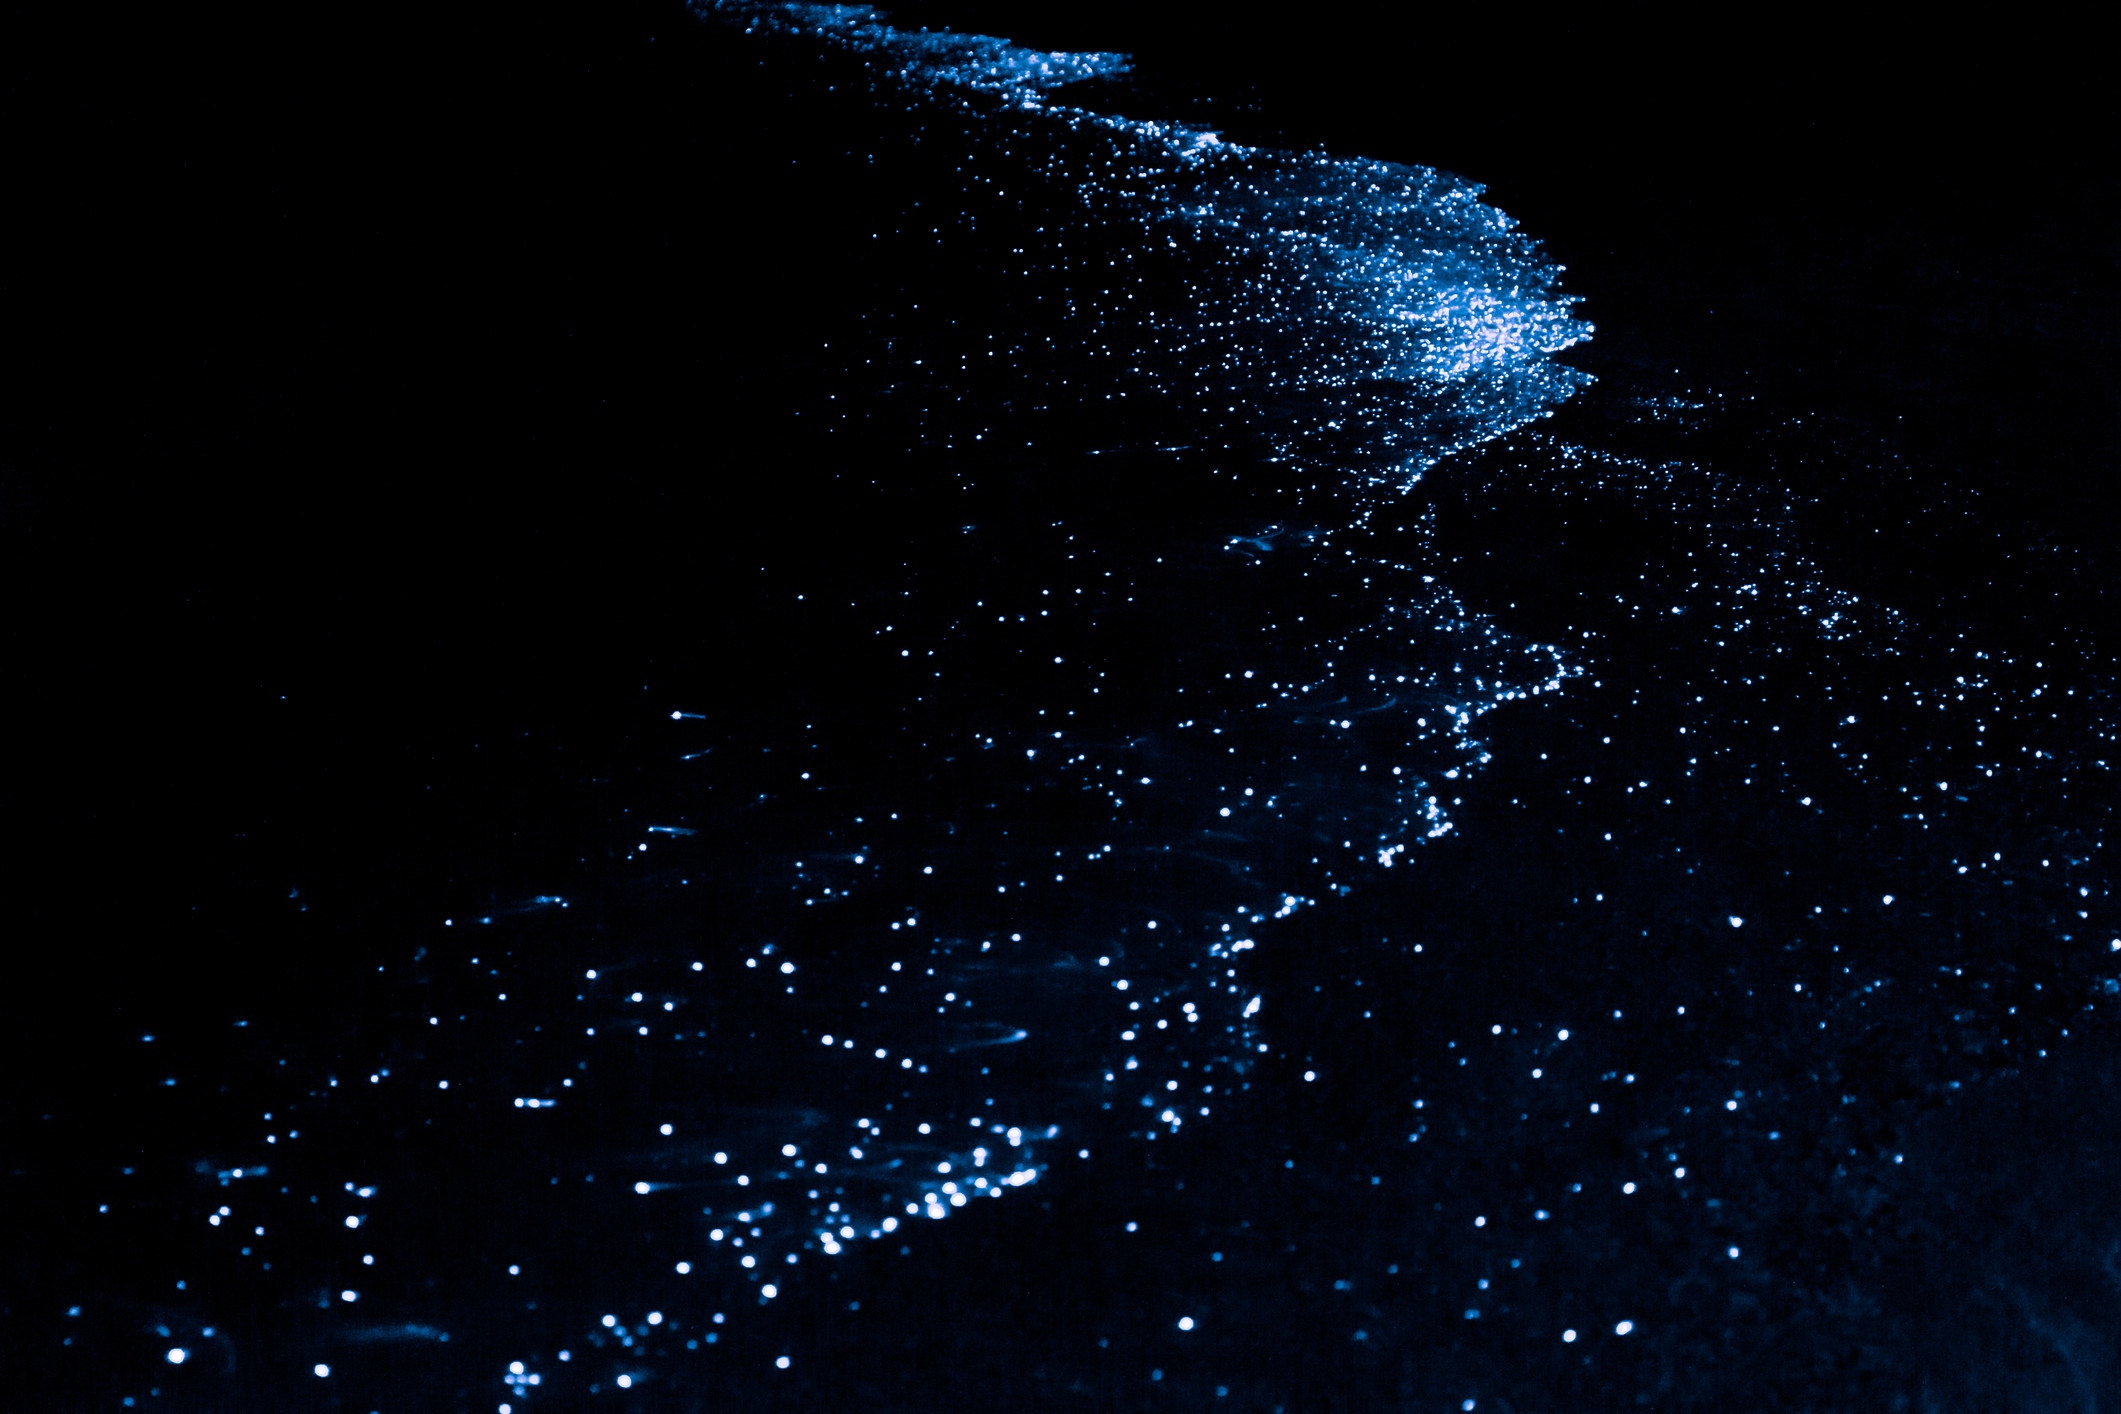 stars reflecting on the lake at night